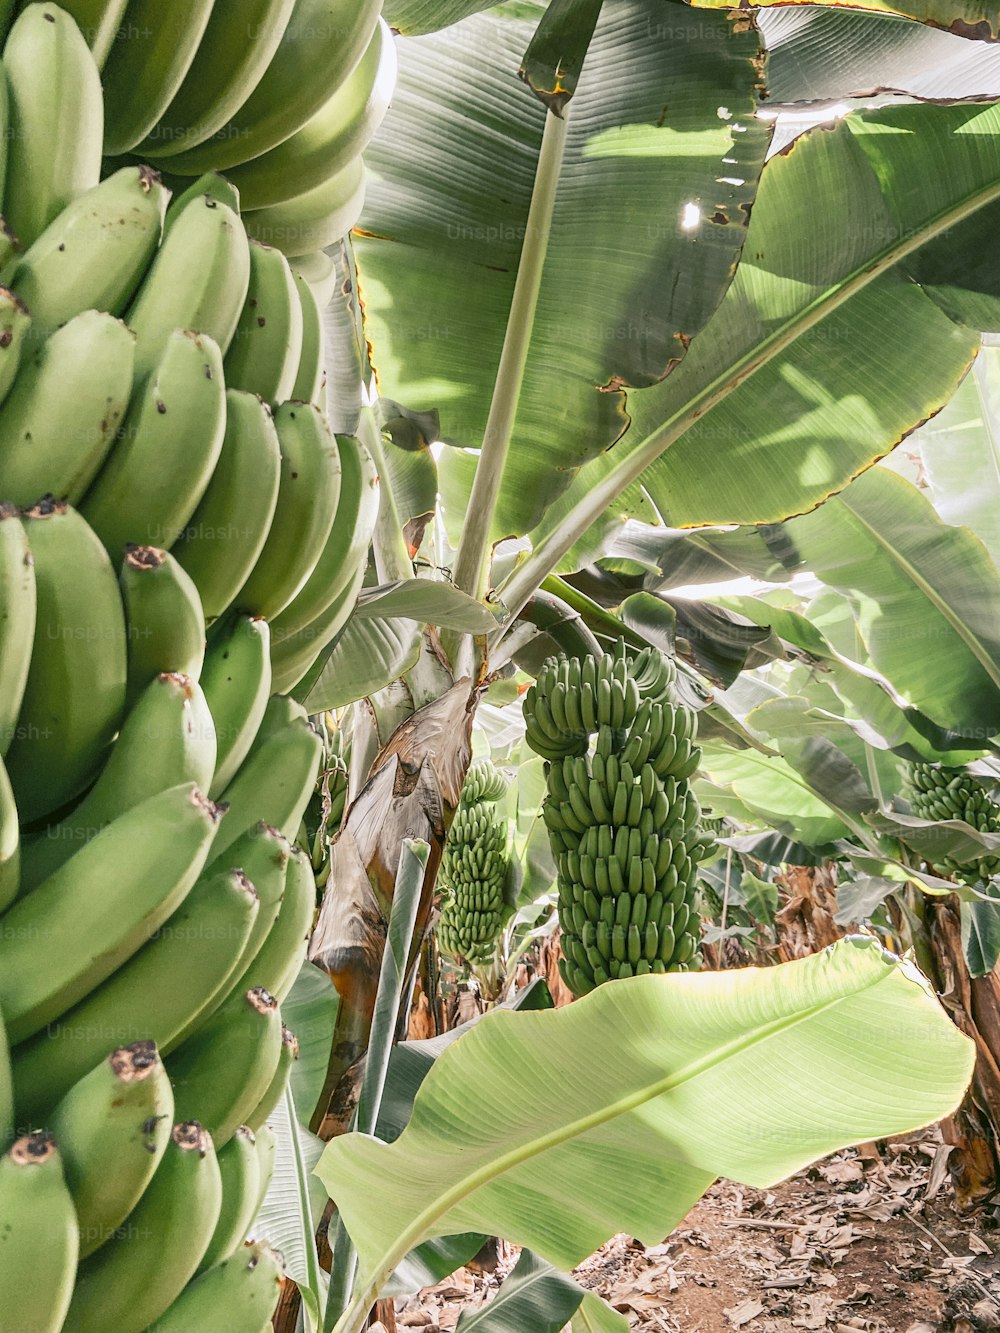 Mazzo maturo di banane verdi pronte per essere raccolte in crescita nella piantagione. Immagine scattata con il cellulare